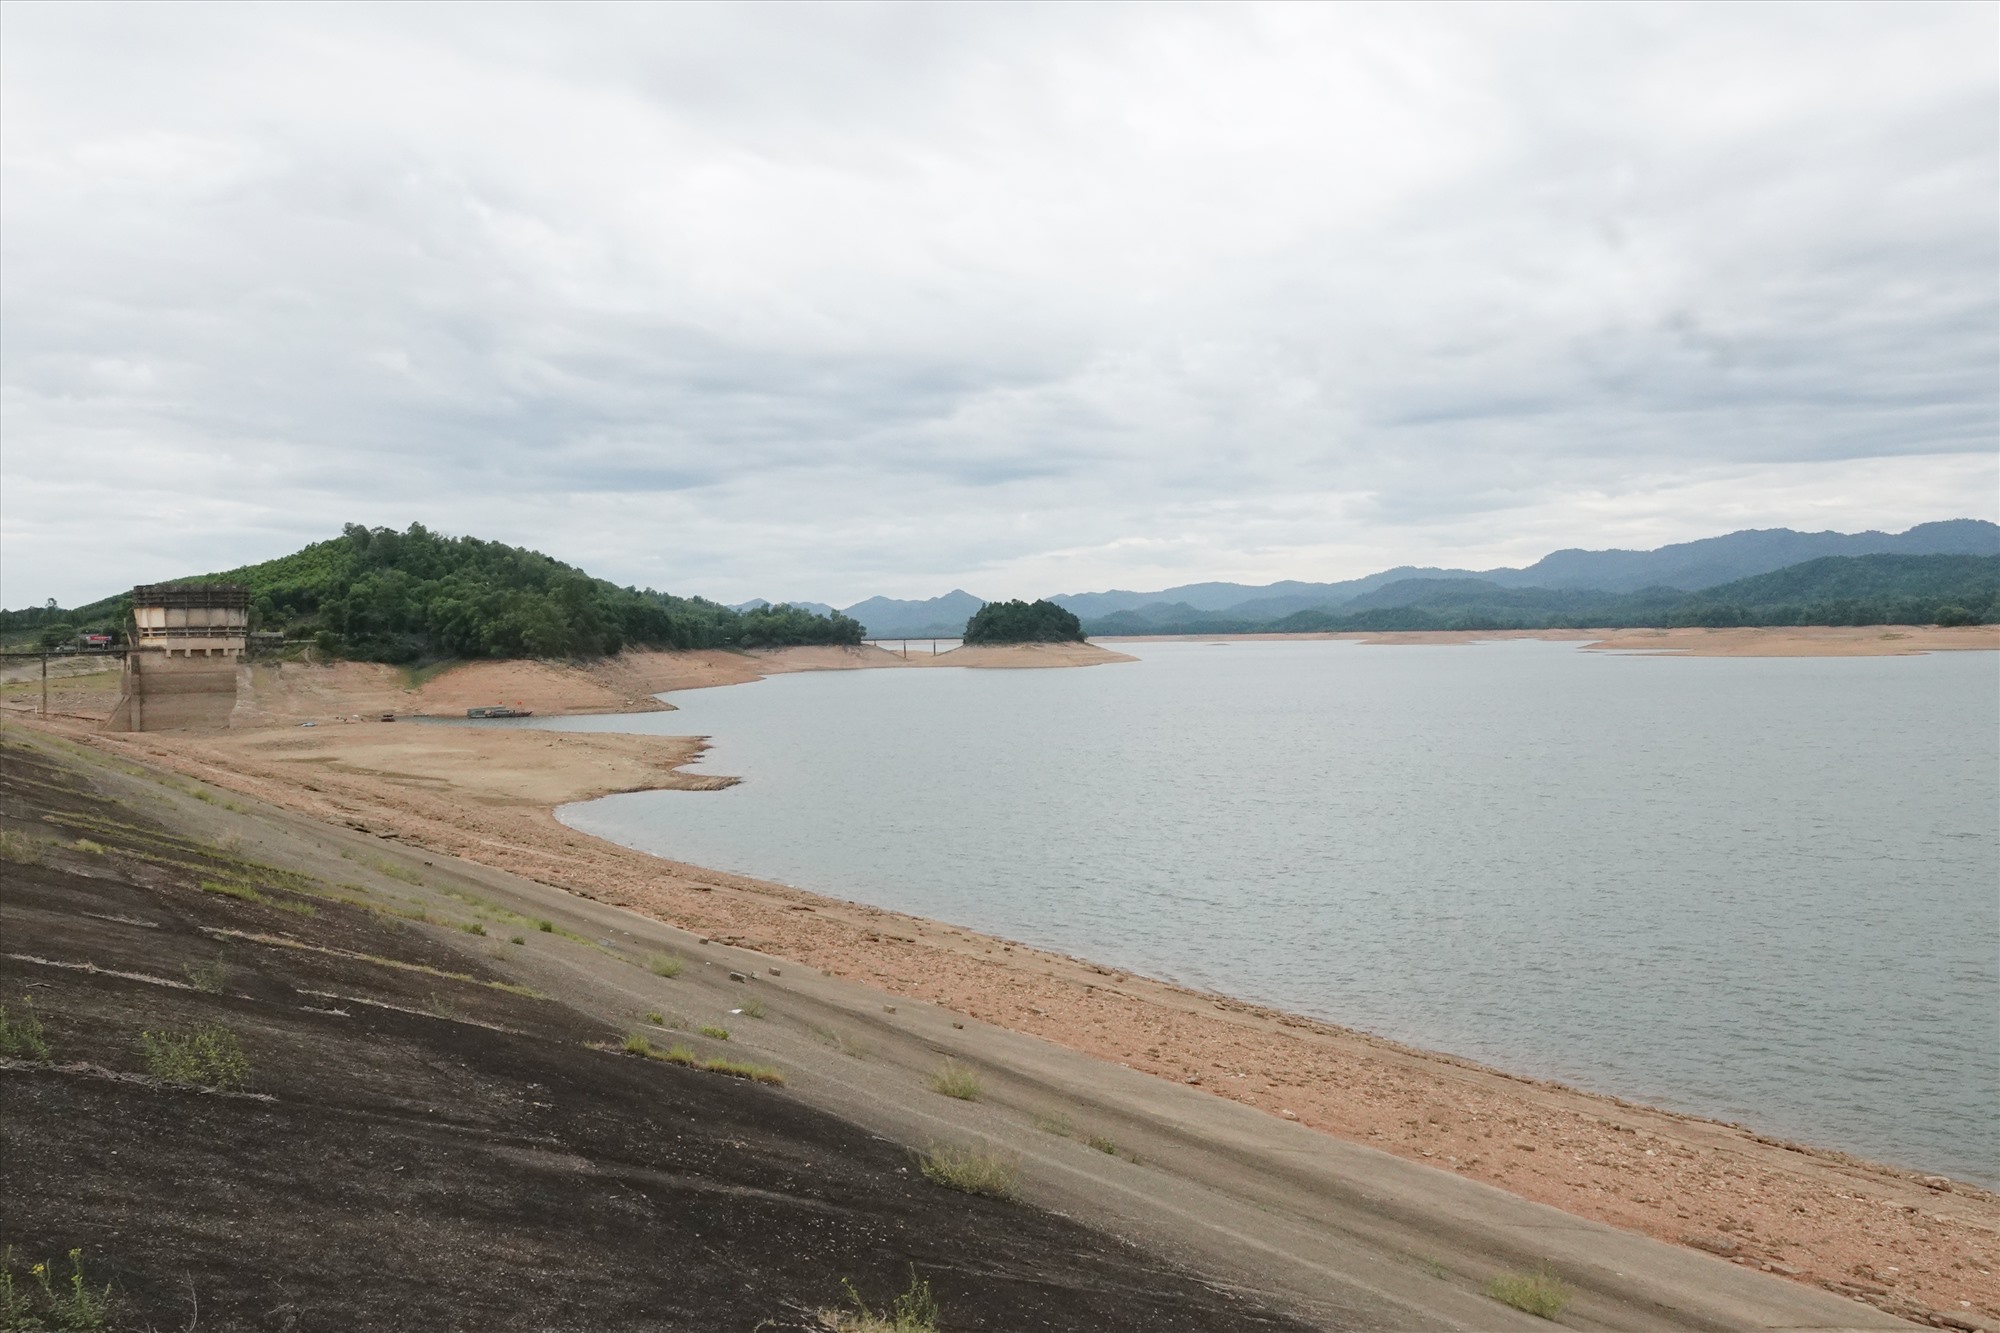 Hiện mực nước trong hồ Kẻ Gỗ còn rất thấp ở mức hơn 44 triệu m3 so với sức chứa 345 triệu m3 của nó. Ảnh: Trần Tuấn.